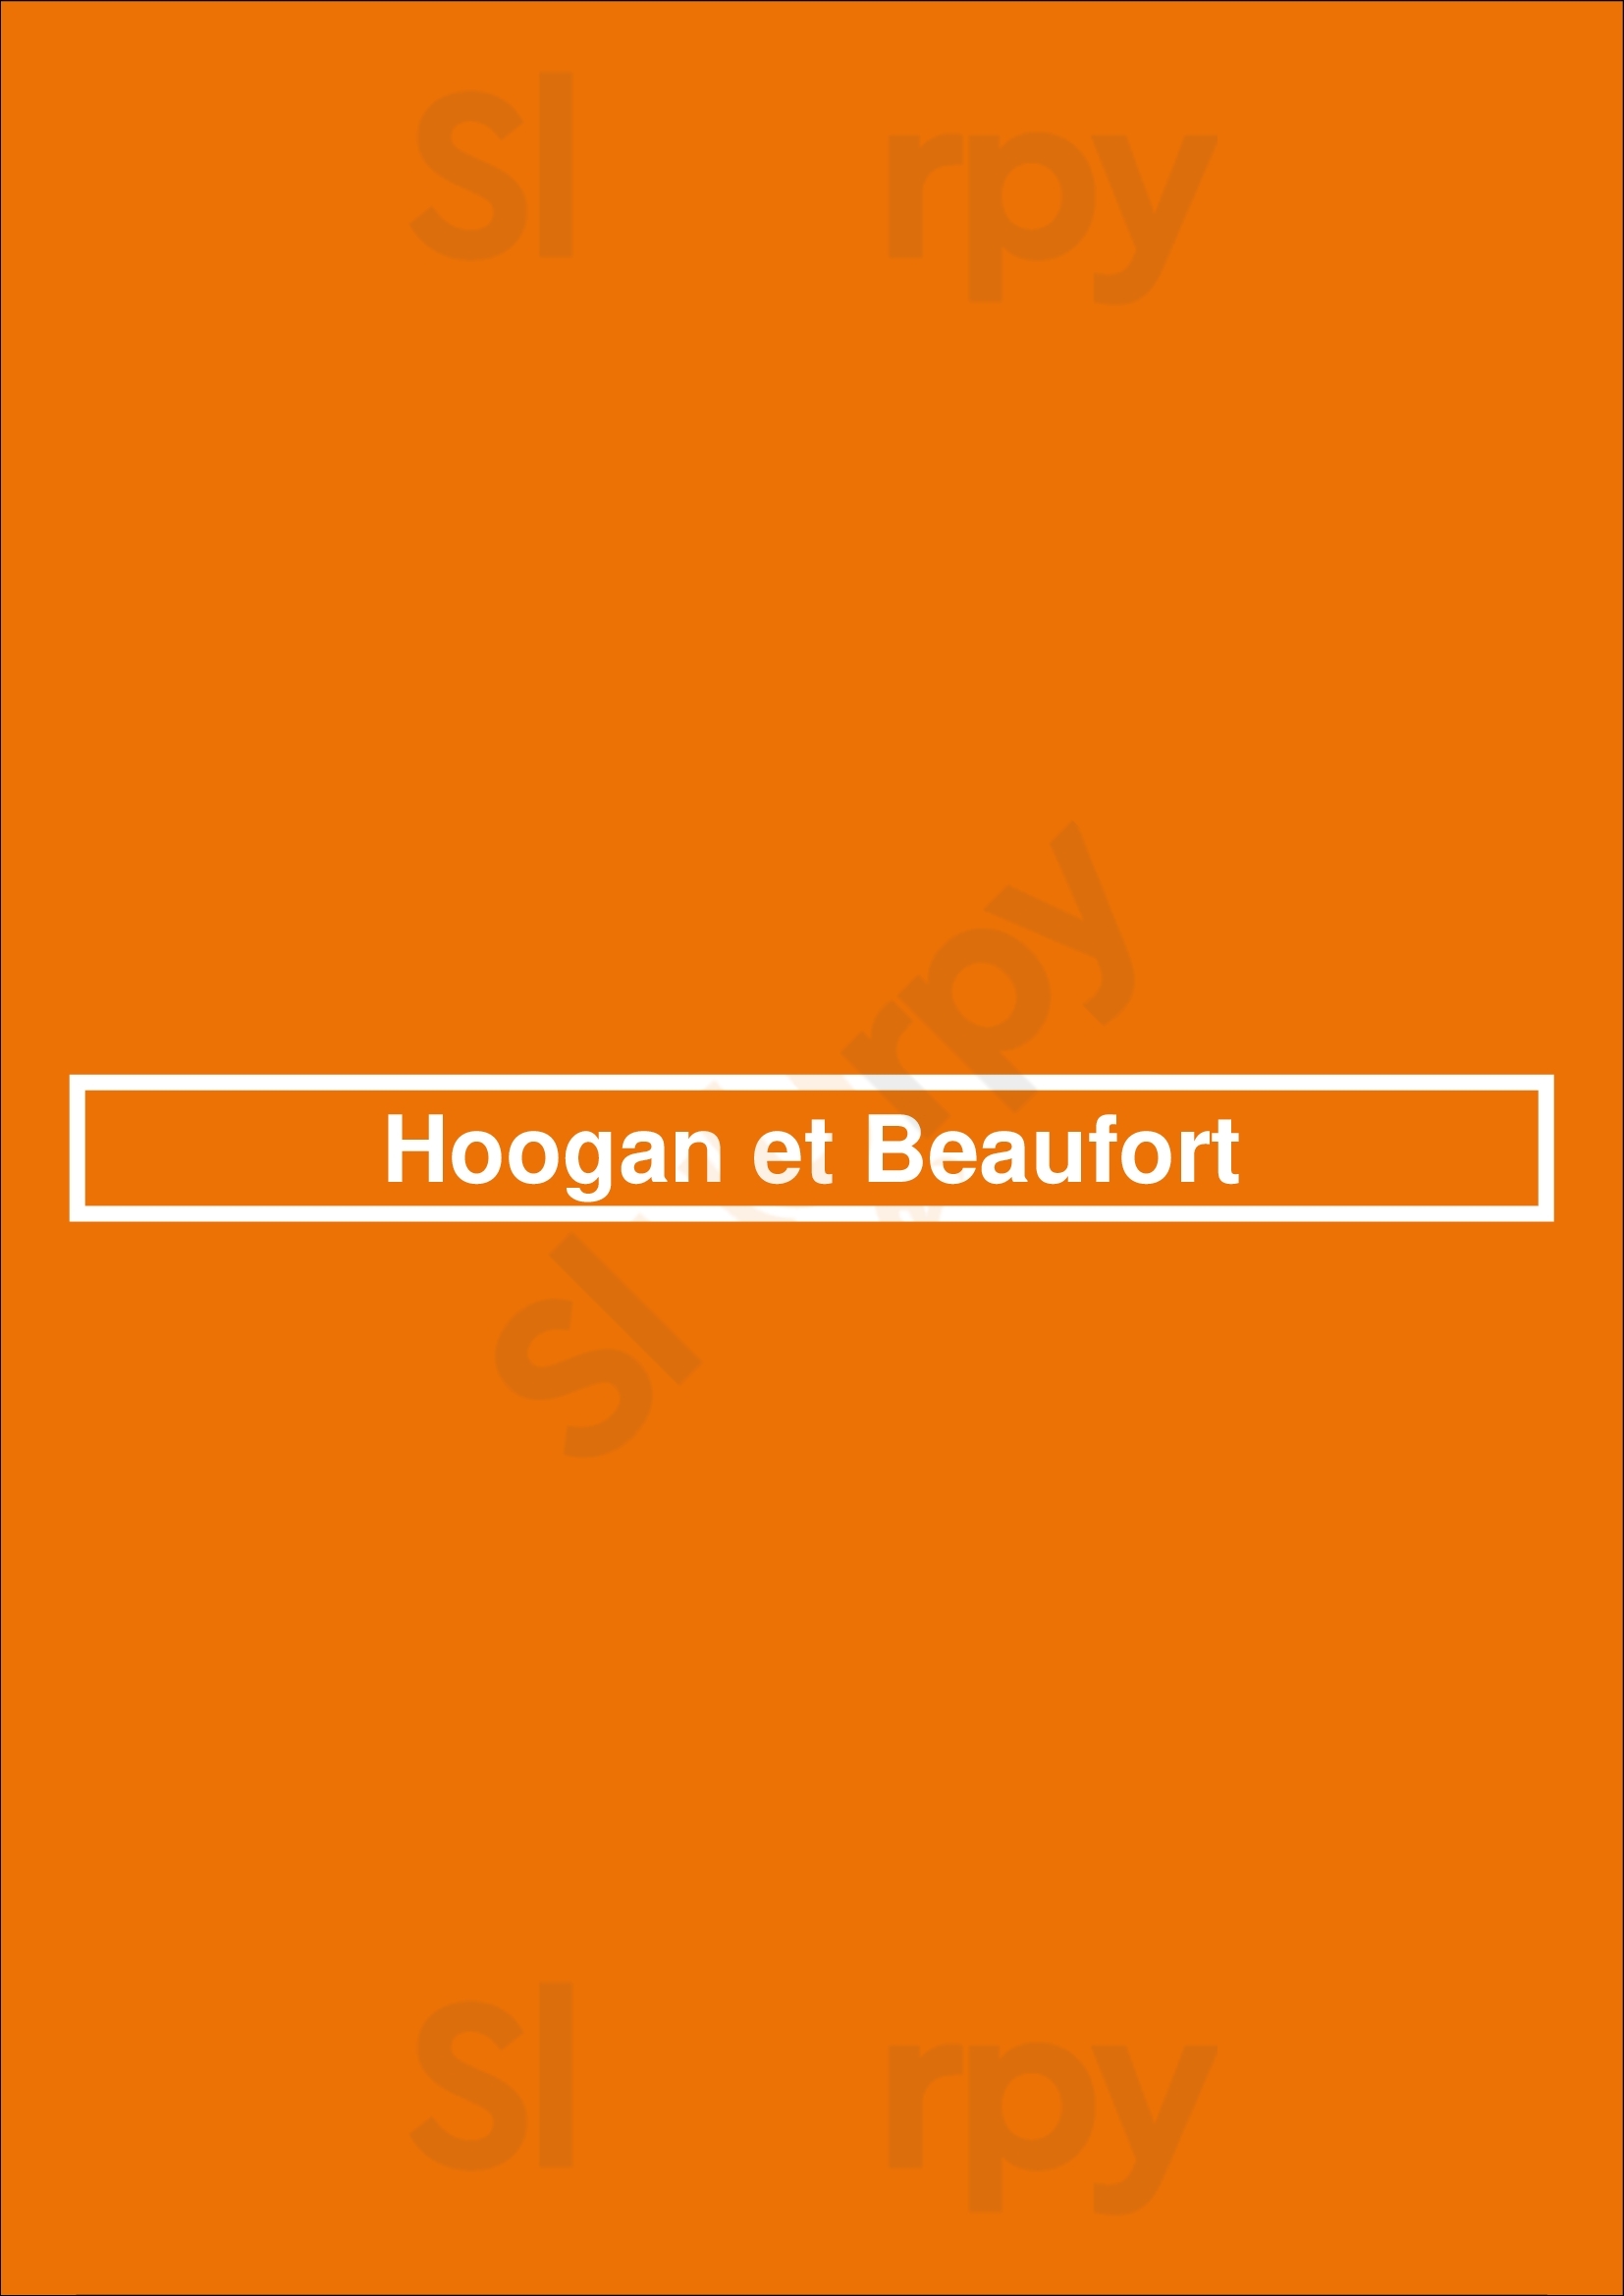 Hoogan Et Beaufort Montreal Menu - 1